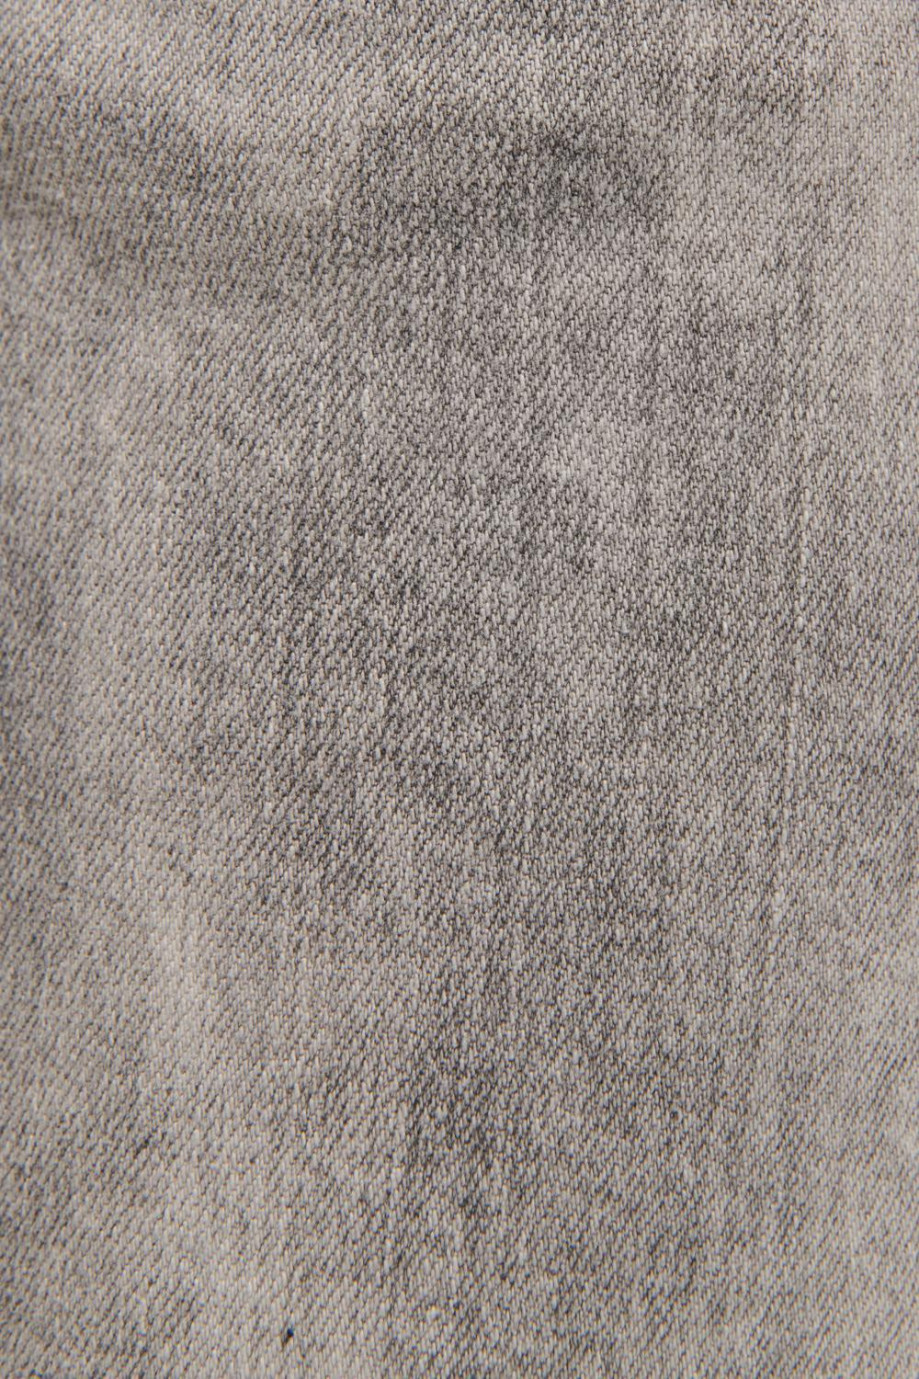 Jean gris oscuro tipo slim tiro bajo con hilos en contraste